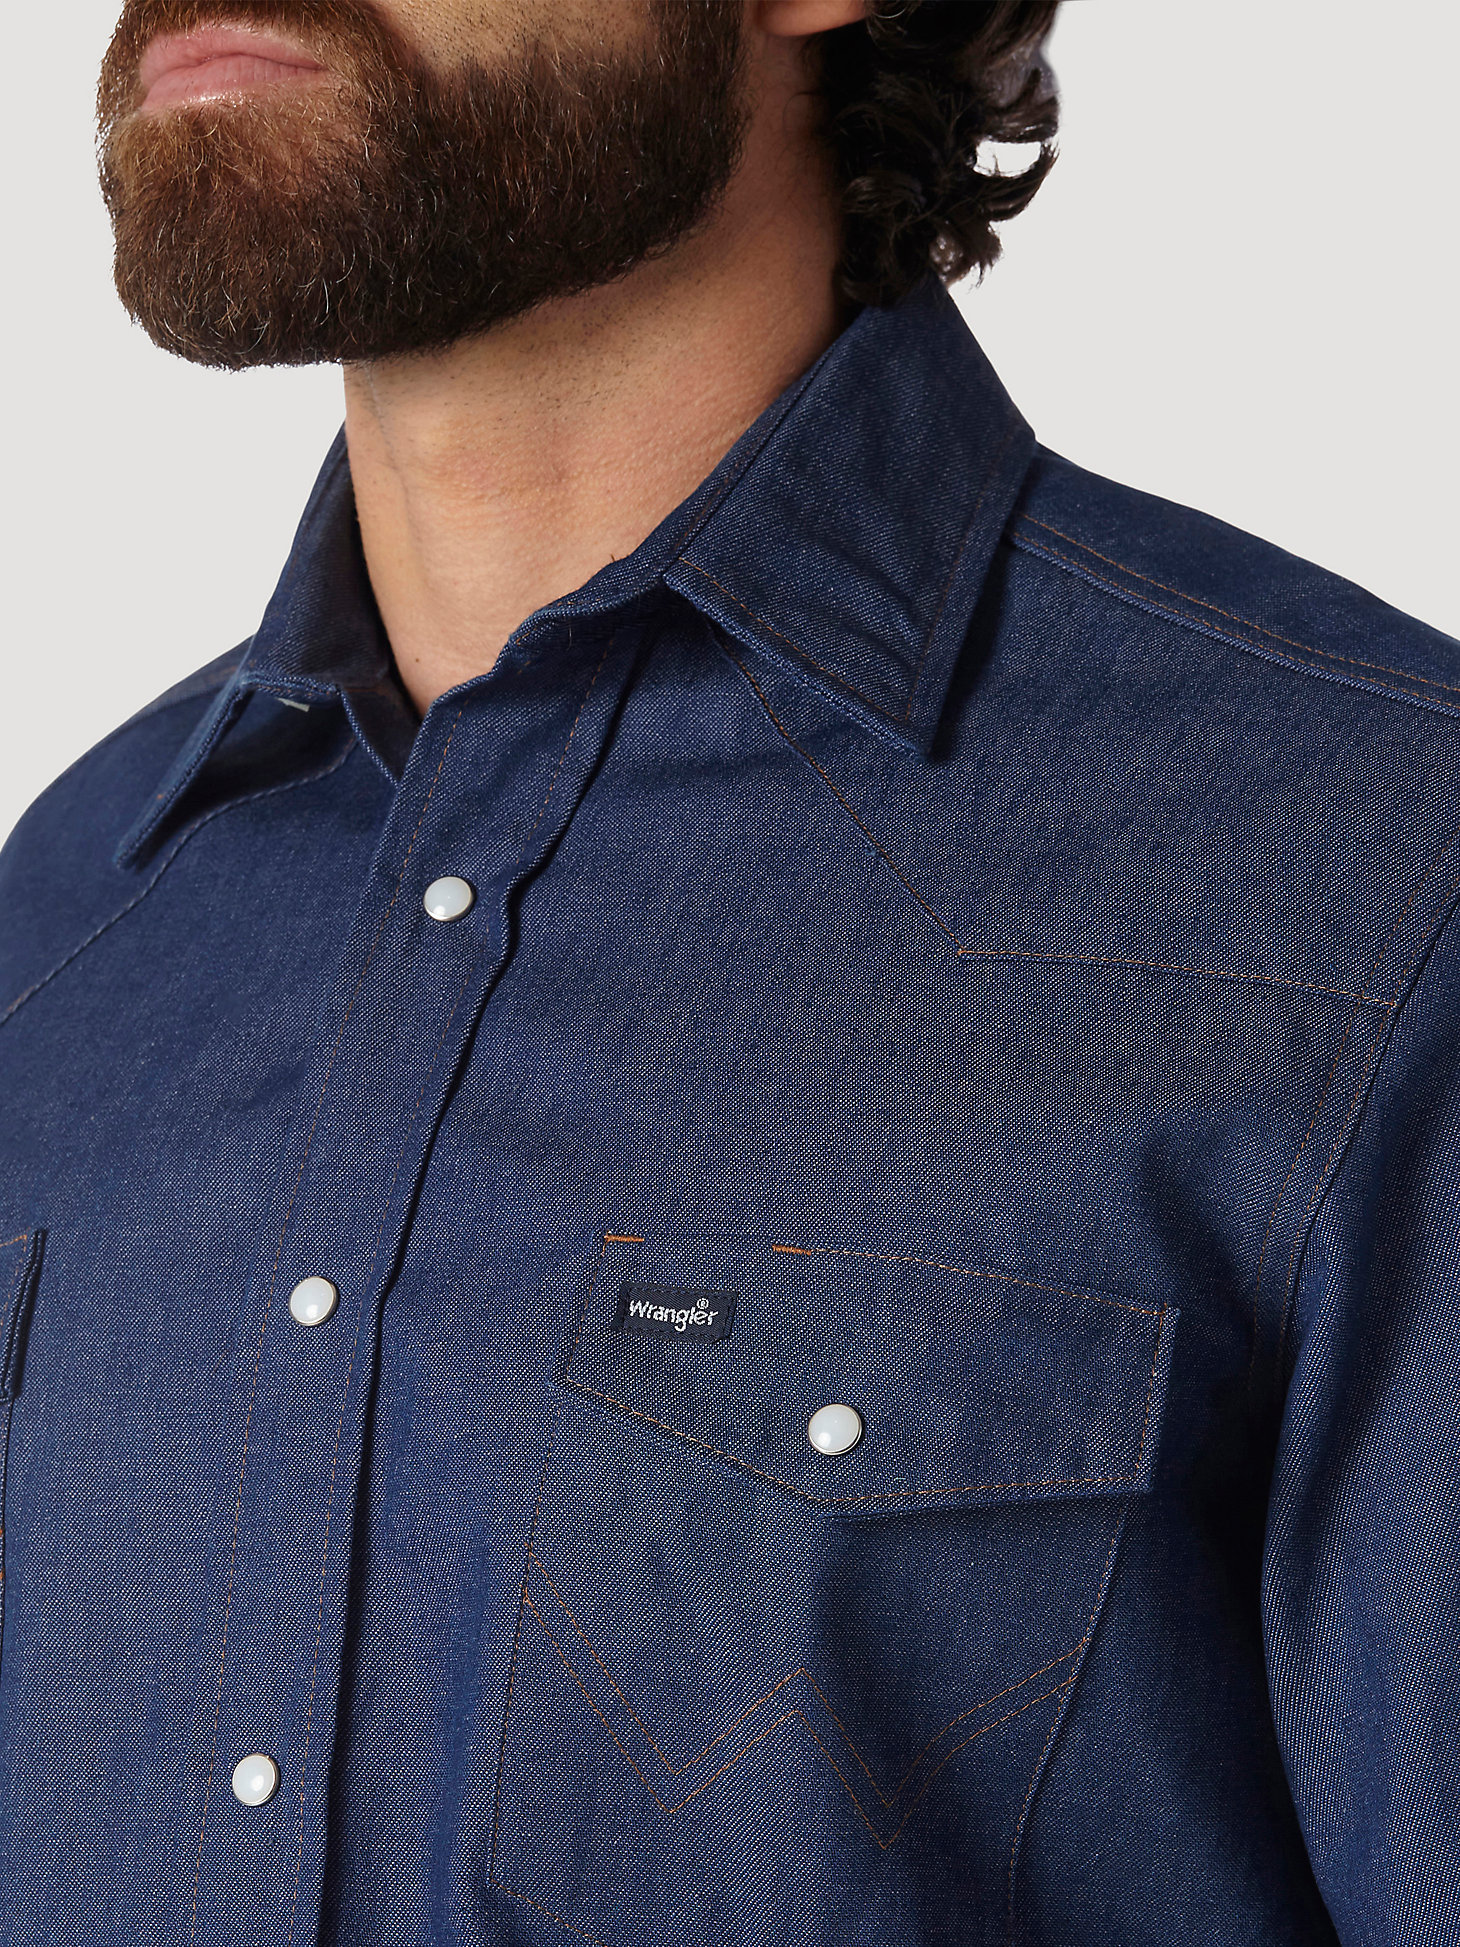 Cowboy Cut® Work Western Rigid Denim Long Sleeve Shirt in Rigid Indigo alternative view 6